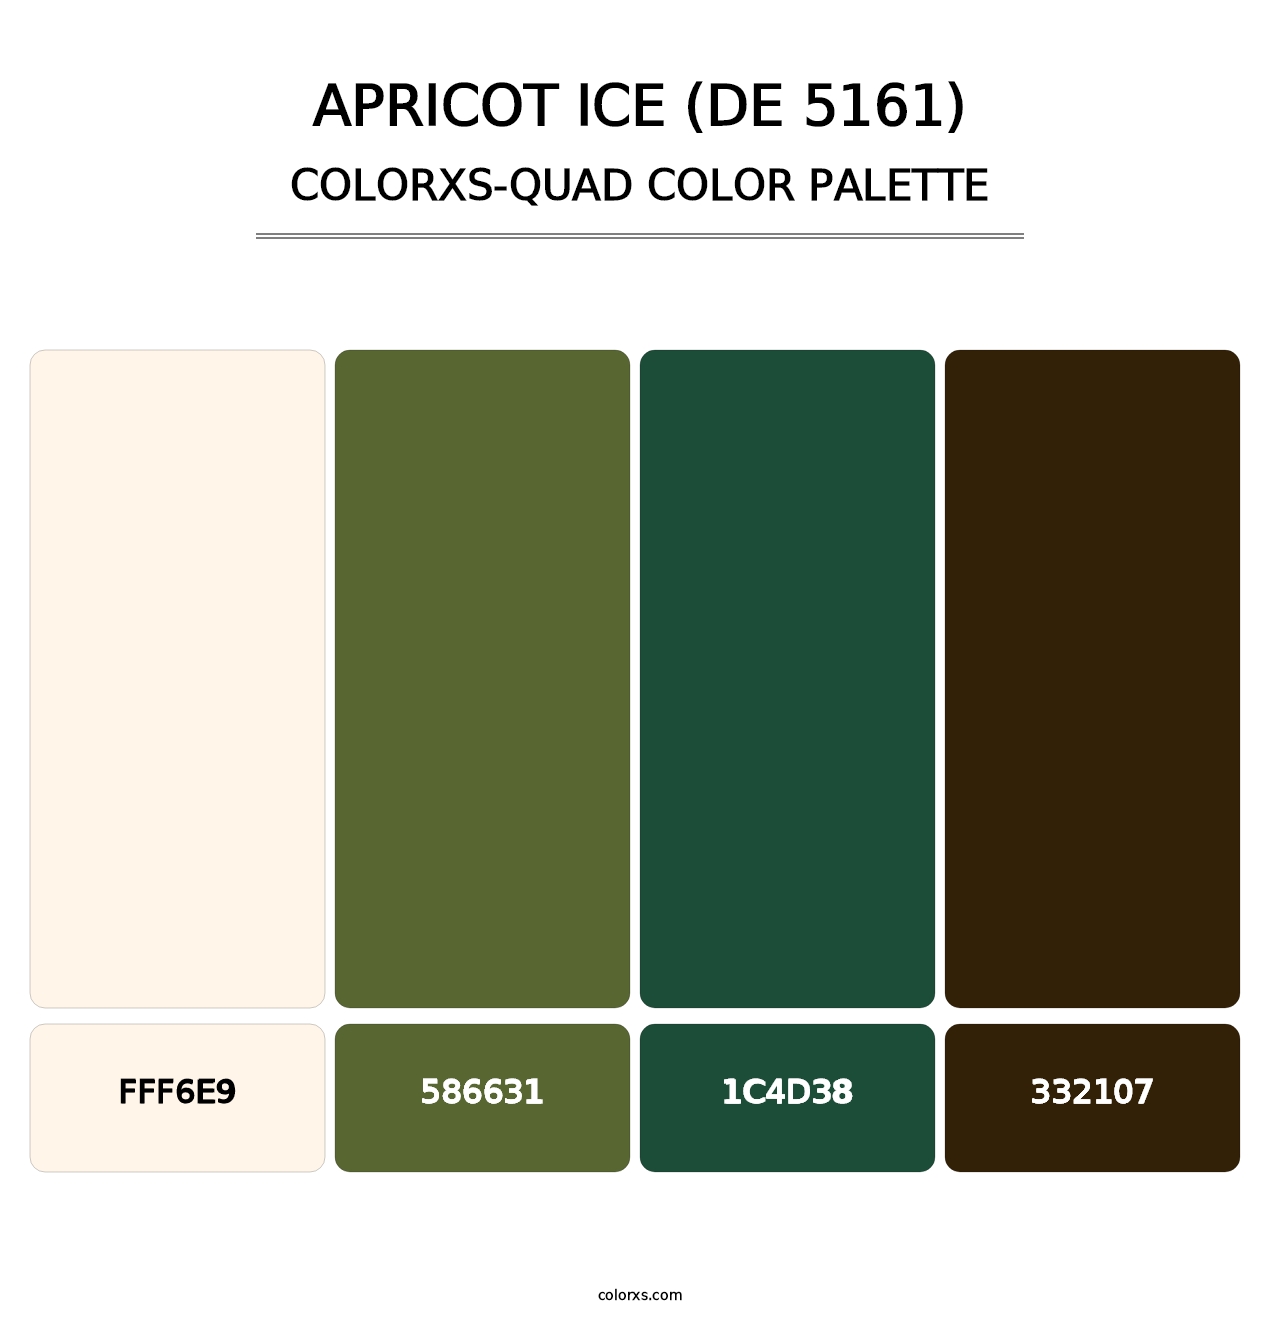 Apricot Ice (DE 5161) - Colorxs Quad Palette